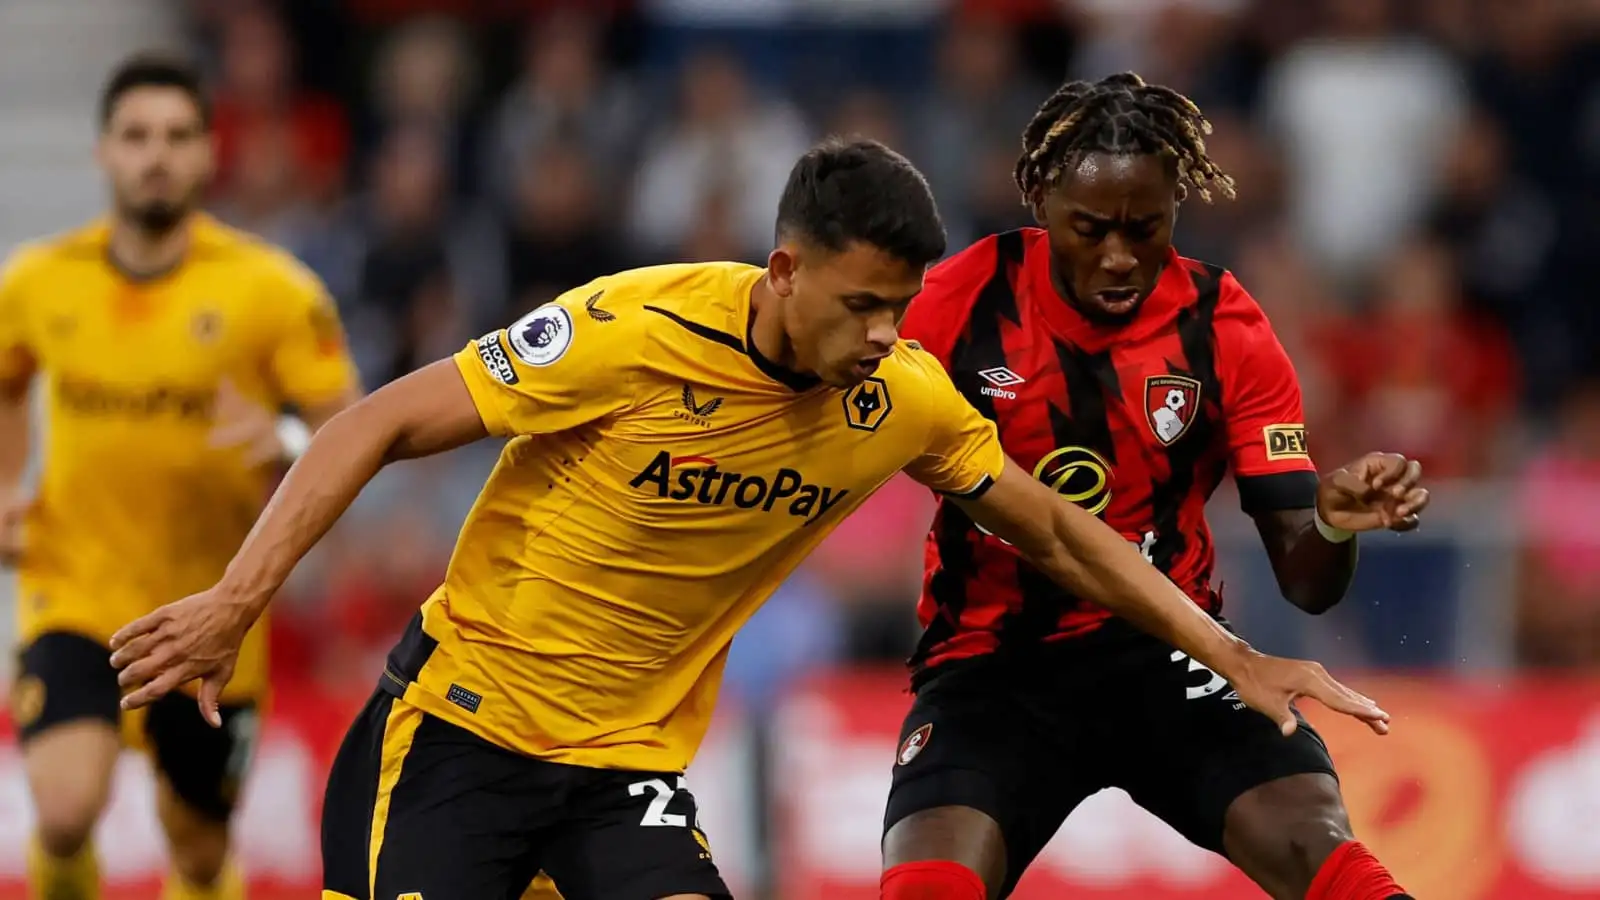 Wolves midfielder Matheus Nunes battling Bournemouth star Jordan Zemura